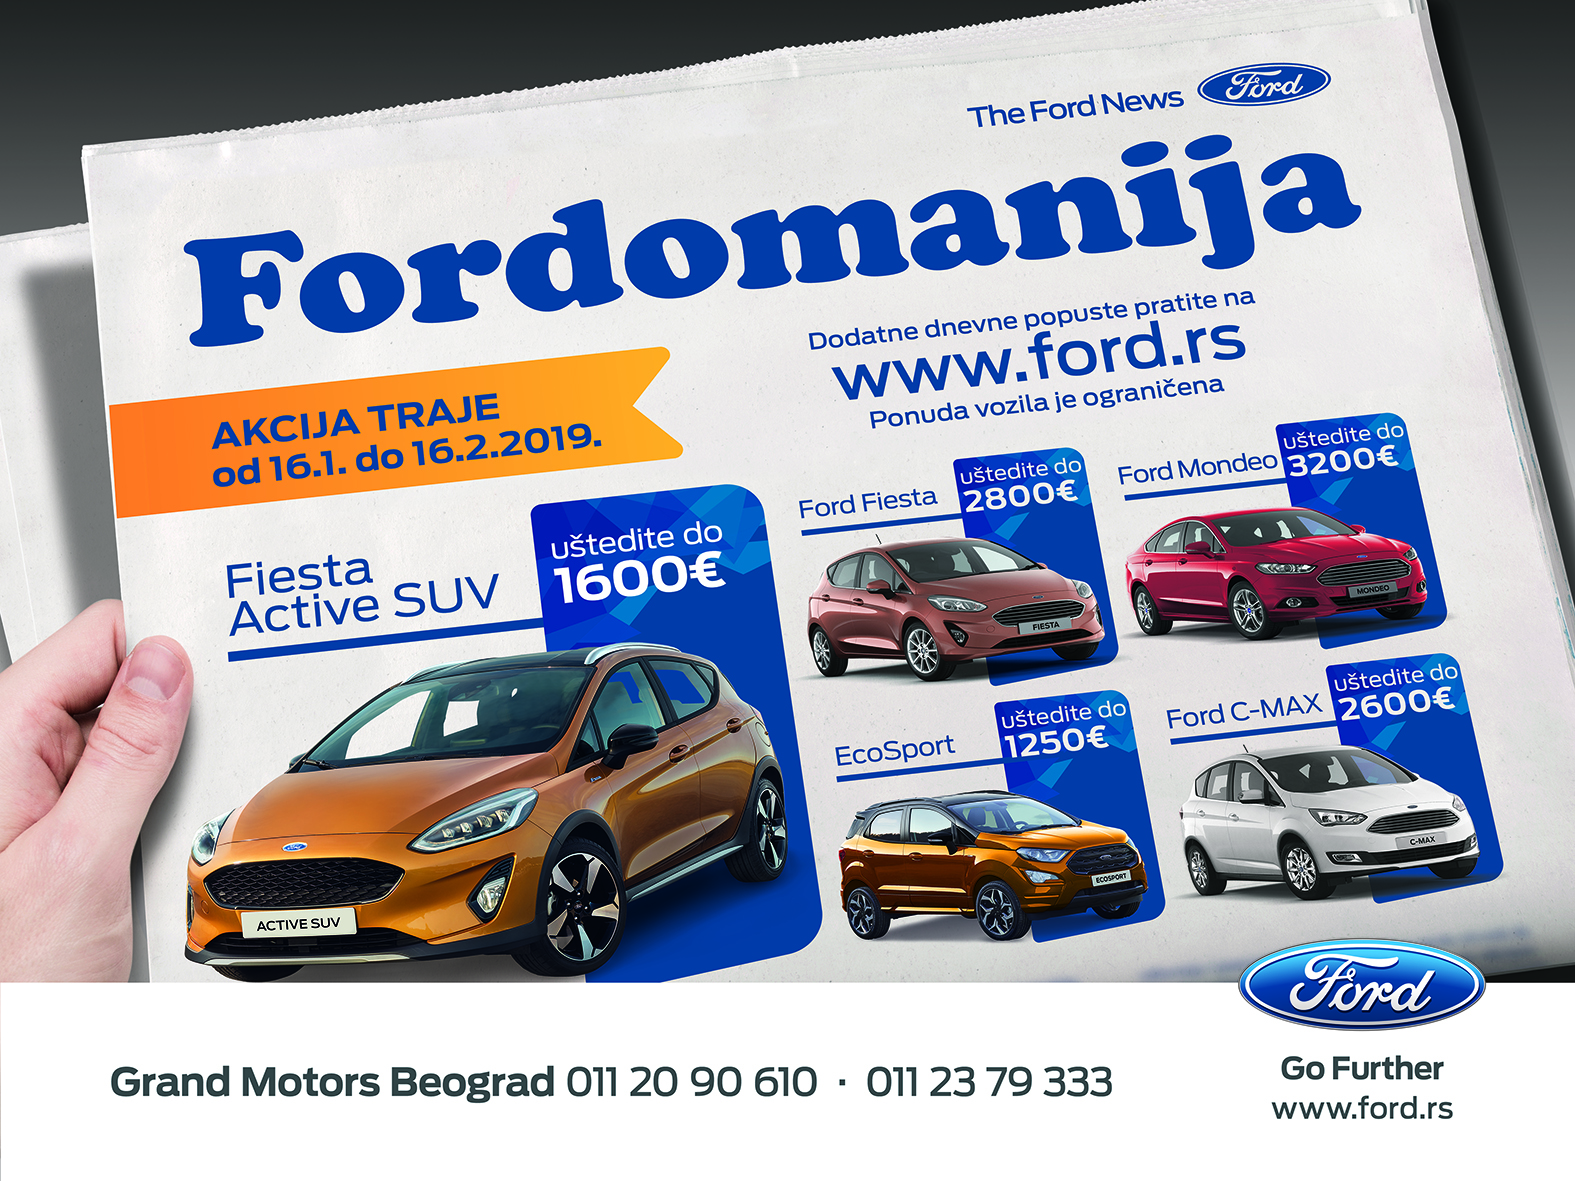 Fordovi modeli tokom tradicionalne Fordomanije, mesec dana po izuzetnim cenama. Neki od automobila s popustom i do 3.000 evra!